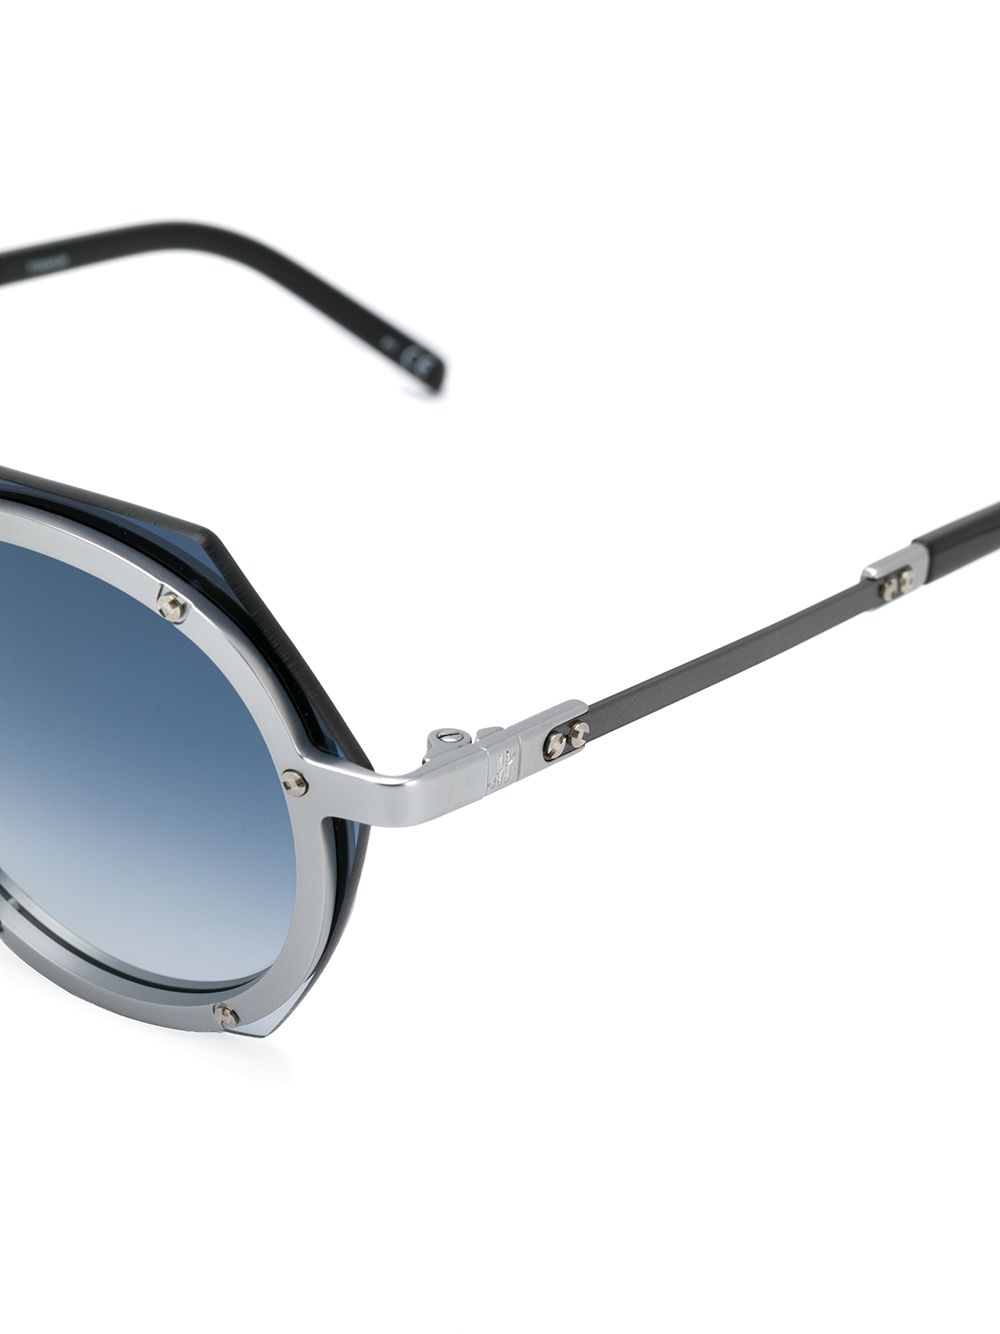 фото Hublot eyewear солнцезащитные очки в оправе геометрической формы